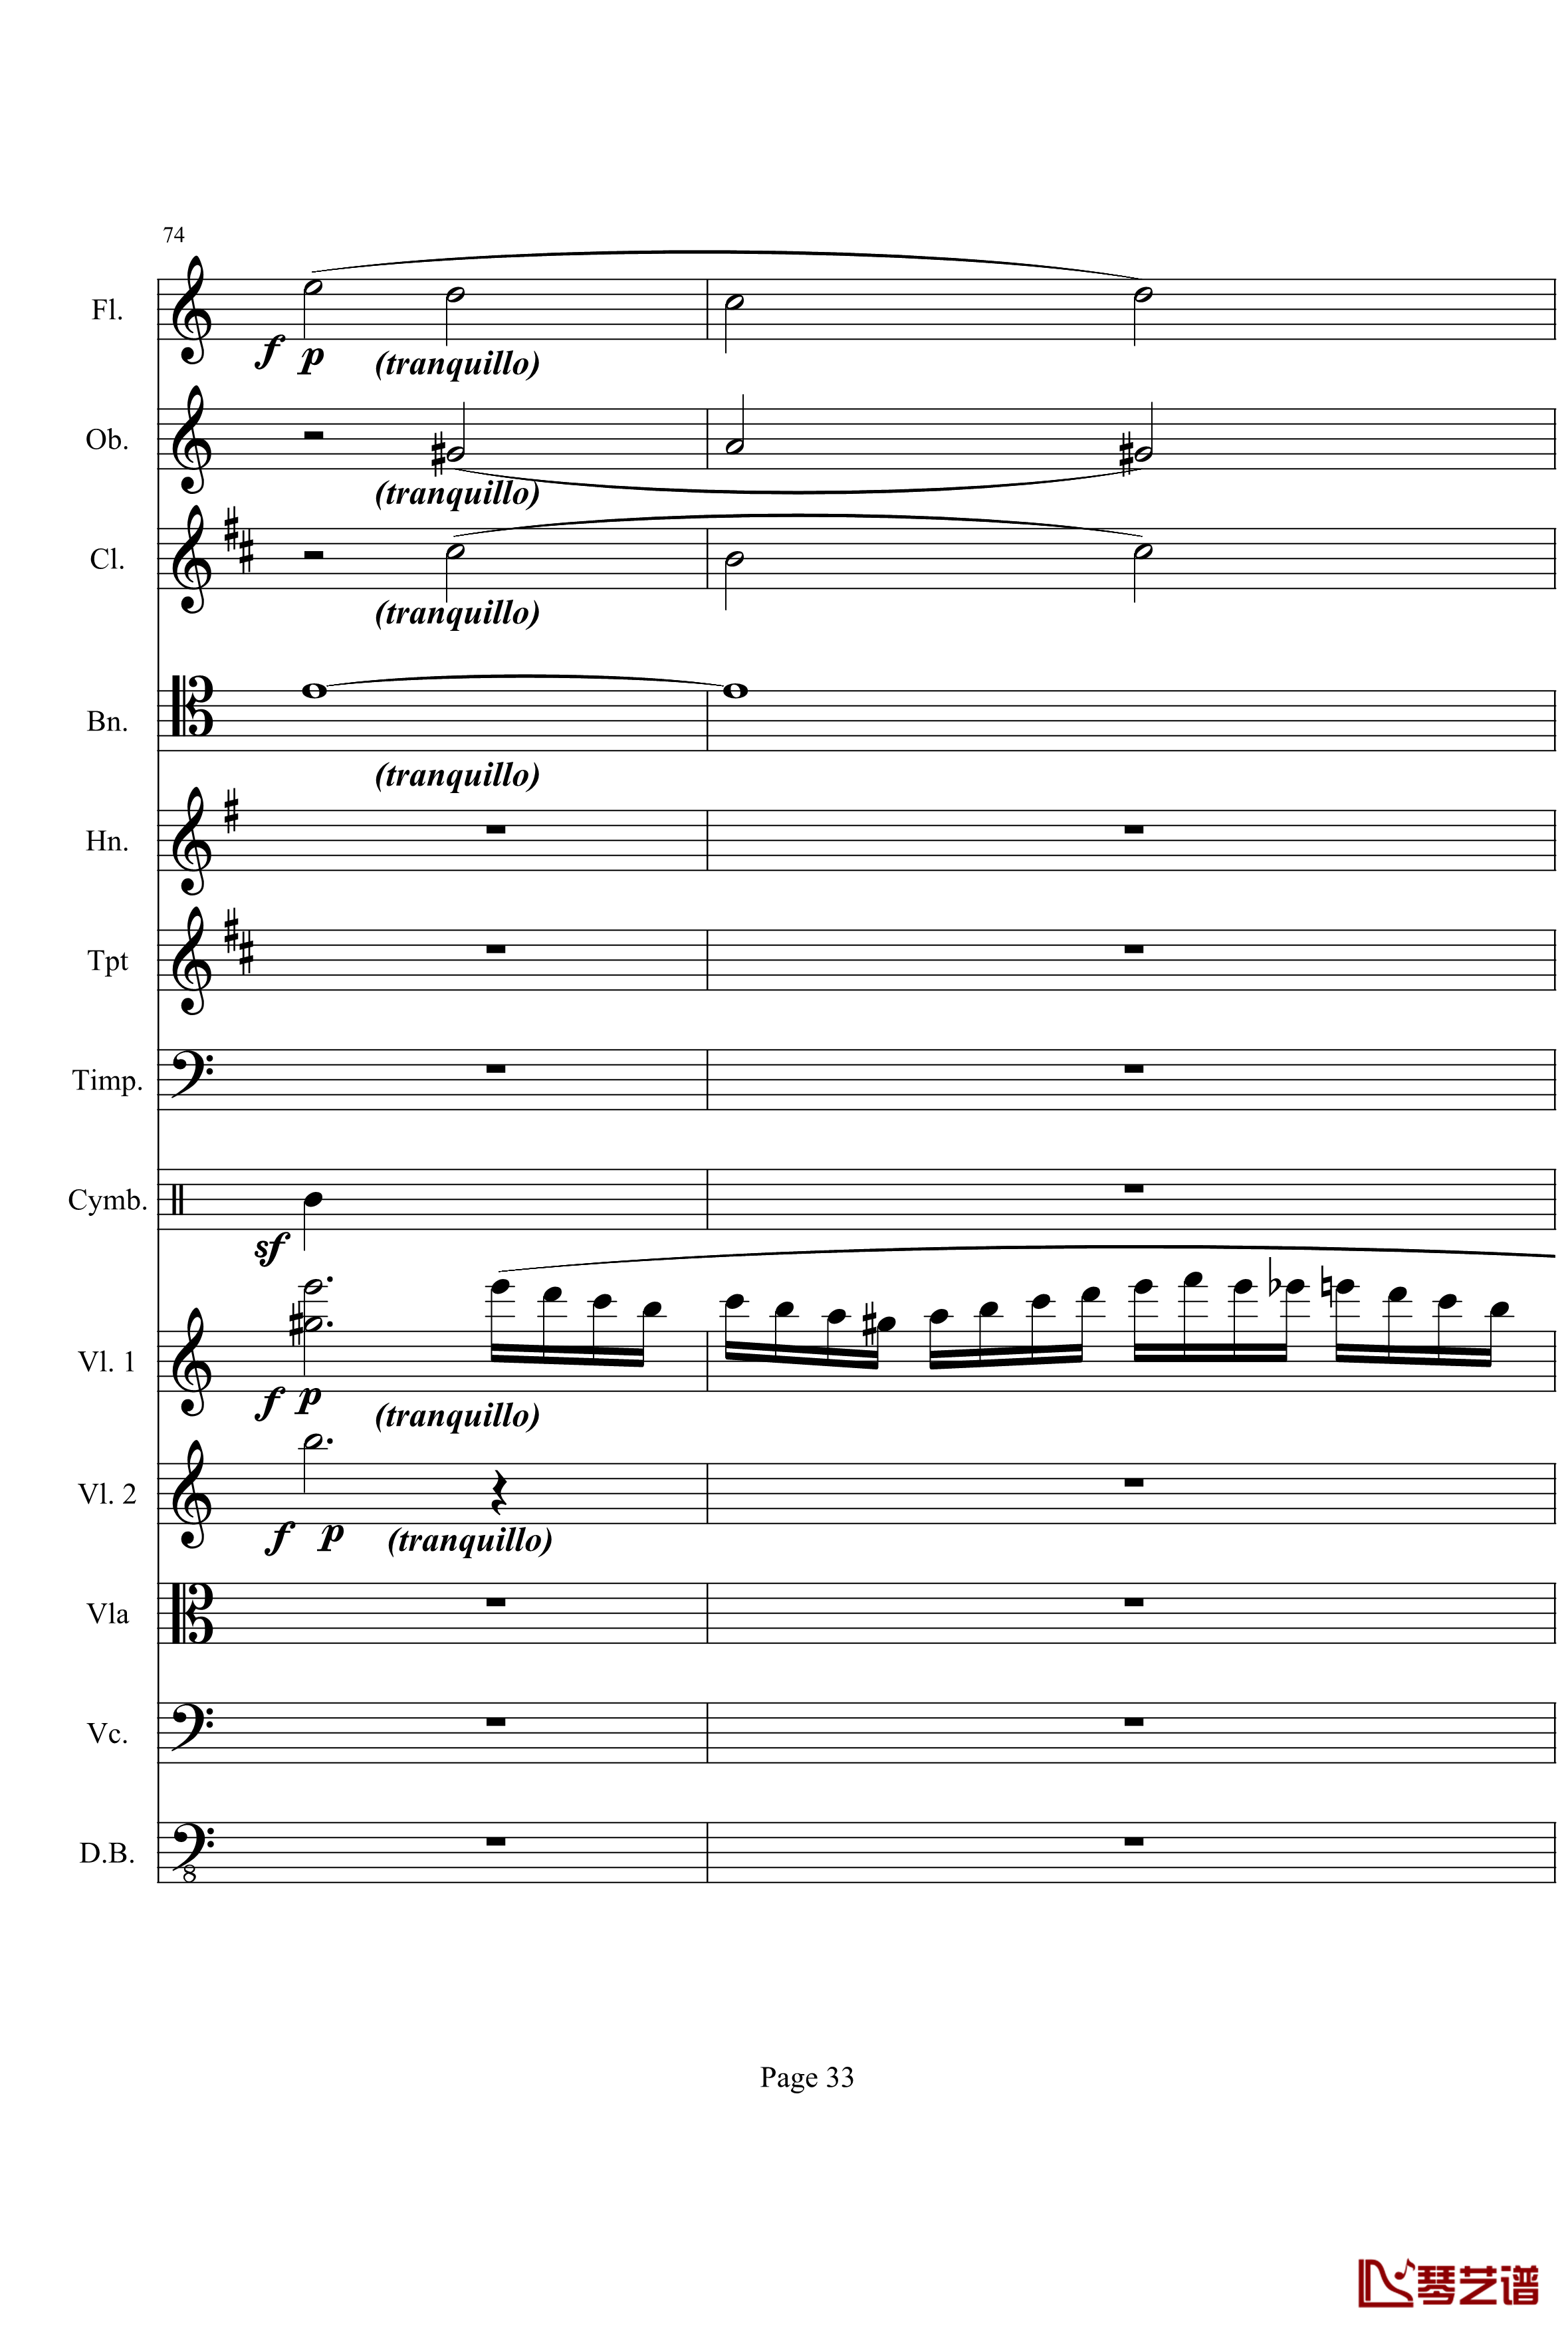 奏鸣曲之交响钢琴谱-第21-Ⅰ-贝多芬-beethoven33